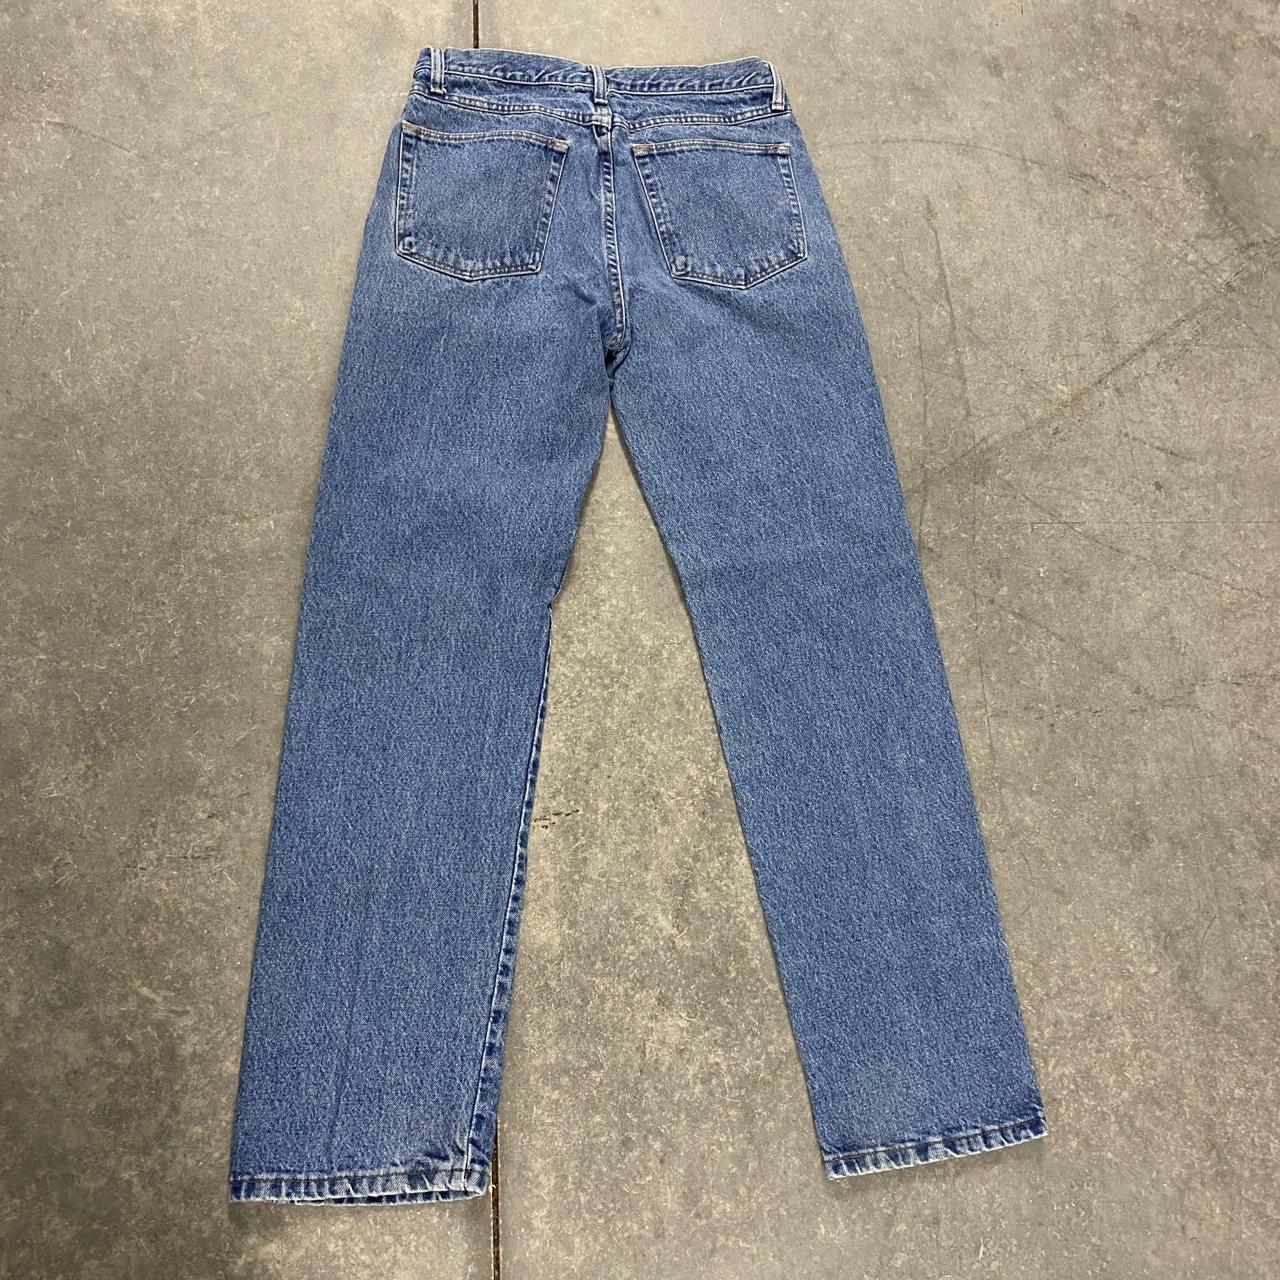 Vintage 90s wrangler straight leg denim jeans 32 x... - Depop